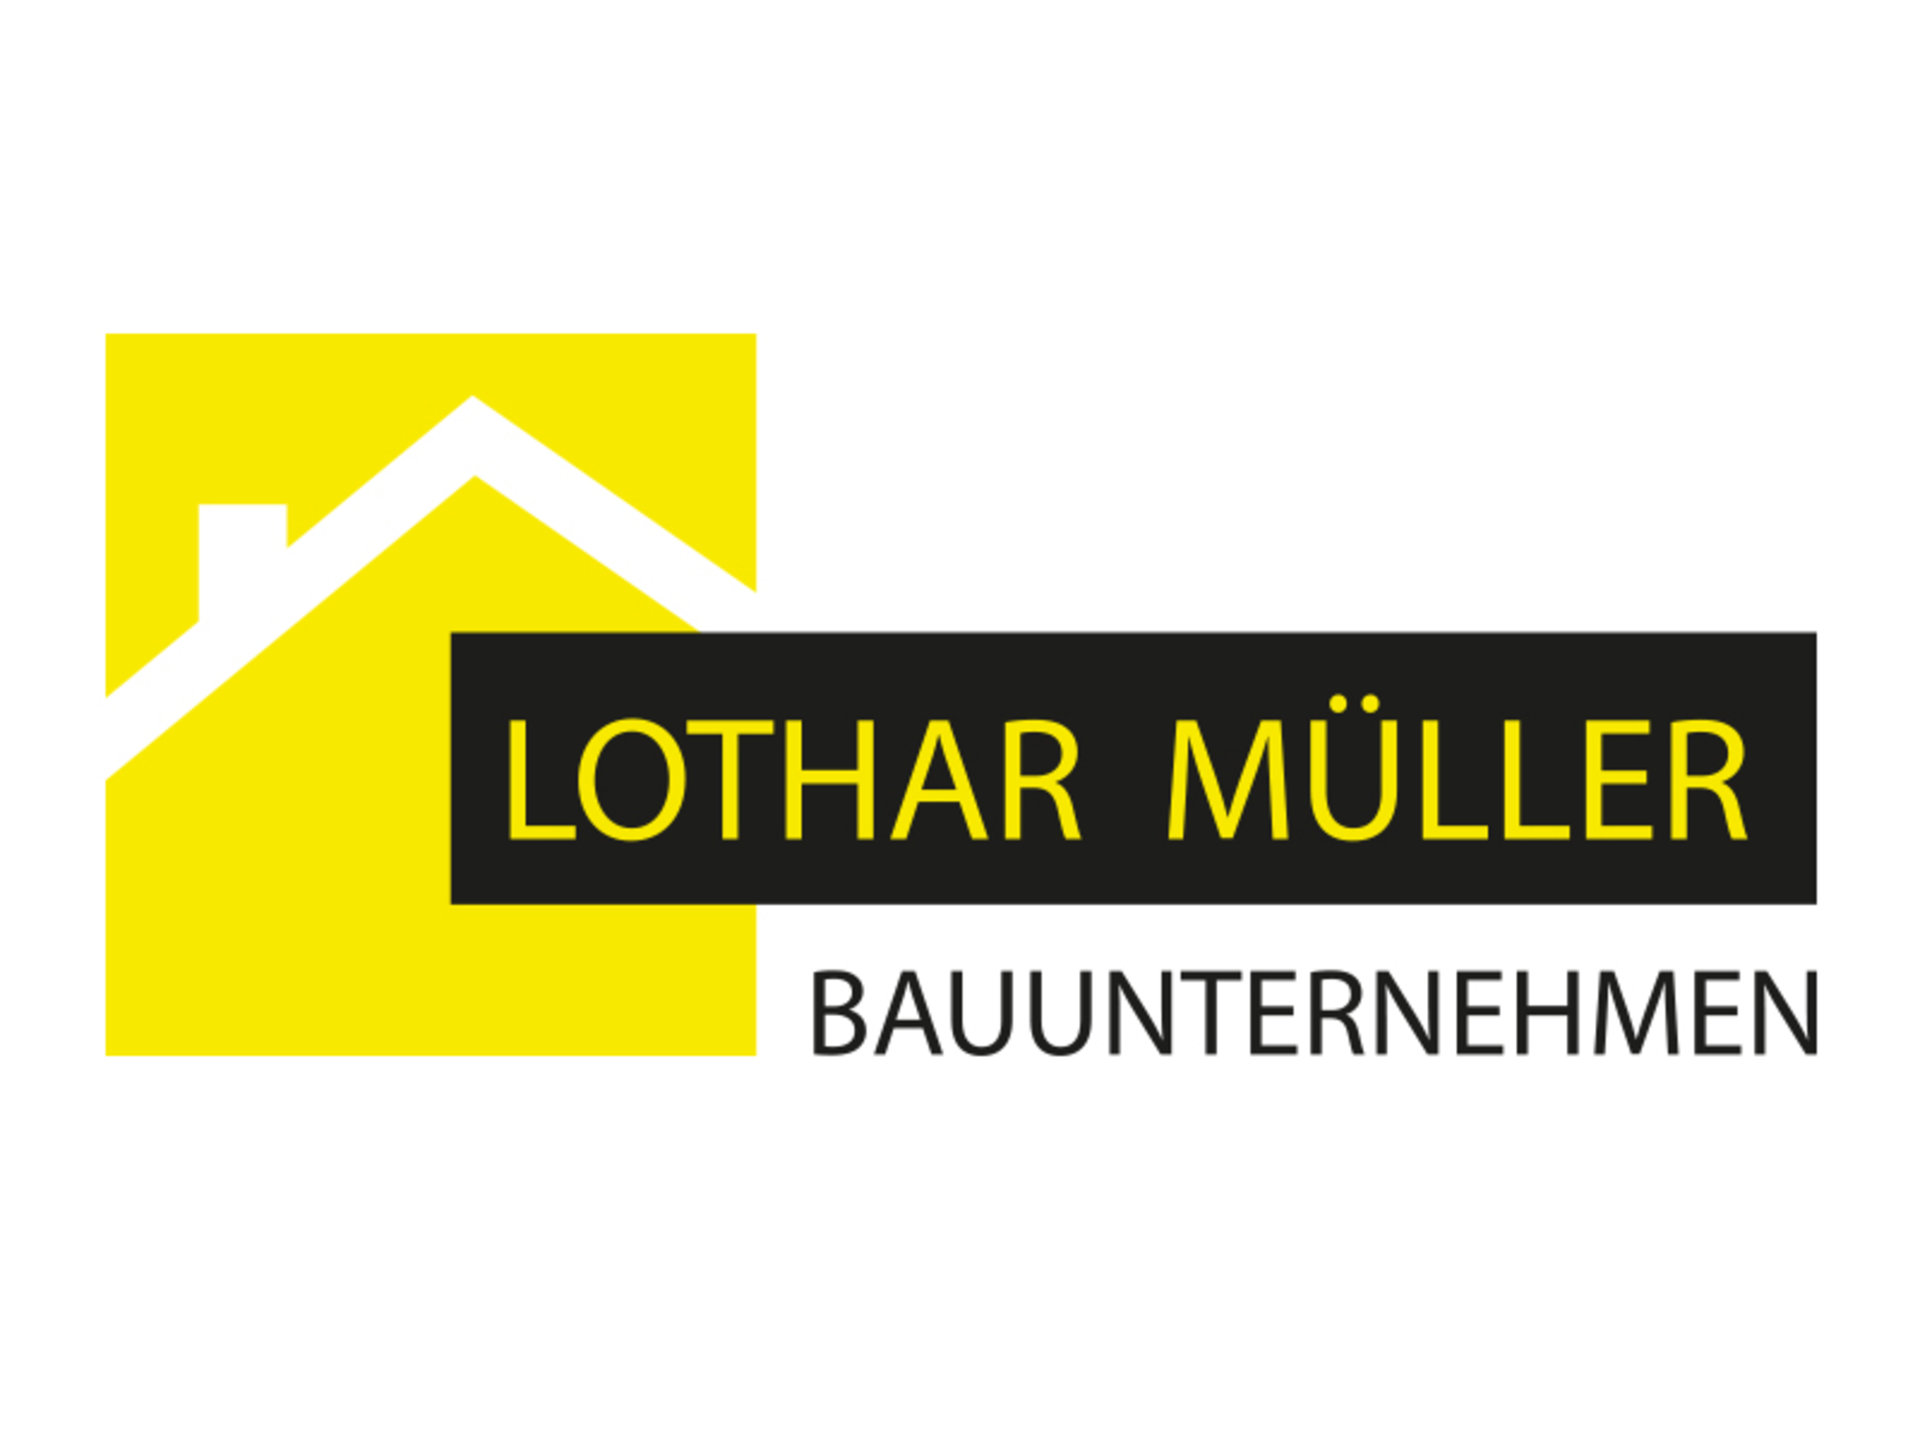 Lothar Müller Bauunternehmen – Ihr BAUMEISTER-HAUS Partner für die Landkreise Konstanz und Bodensee sowie einzelne Gemeinden der Landkreise Tuttlingen, Schwarzwald-Baar und Sigmaringen